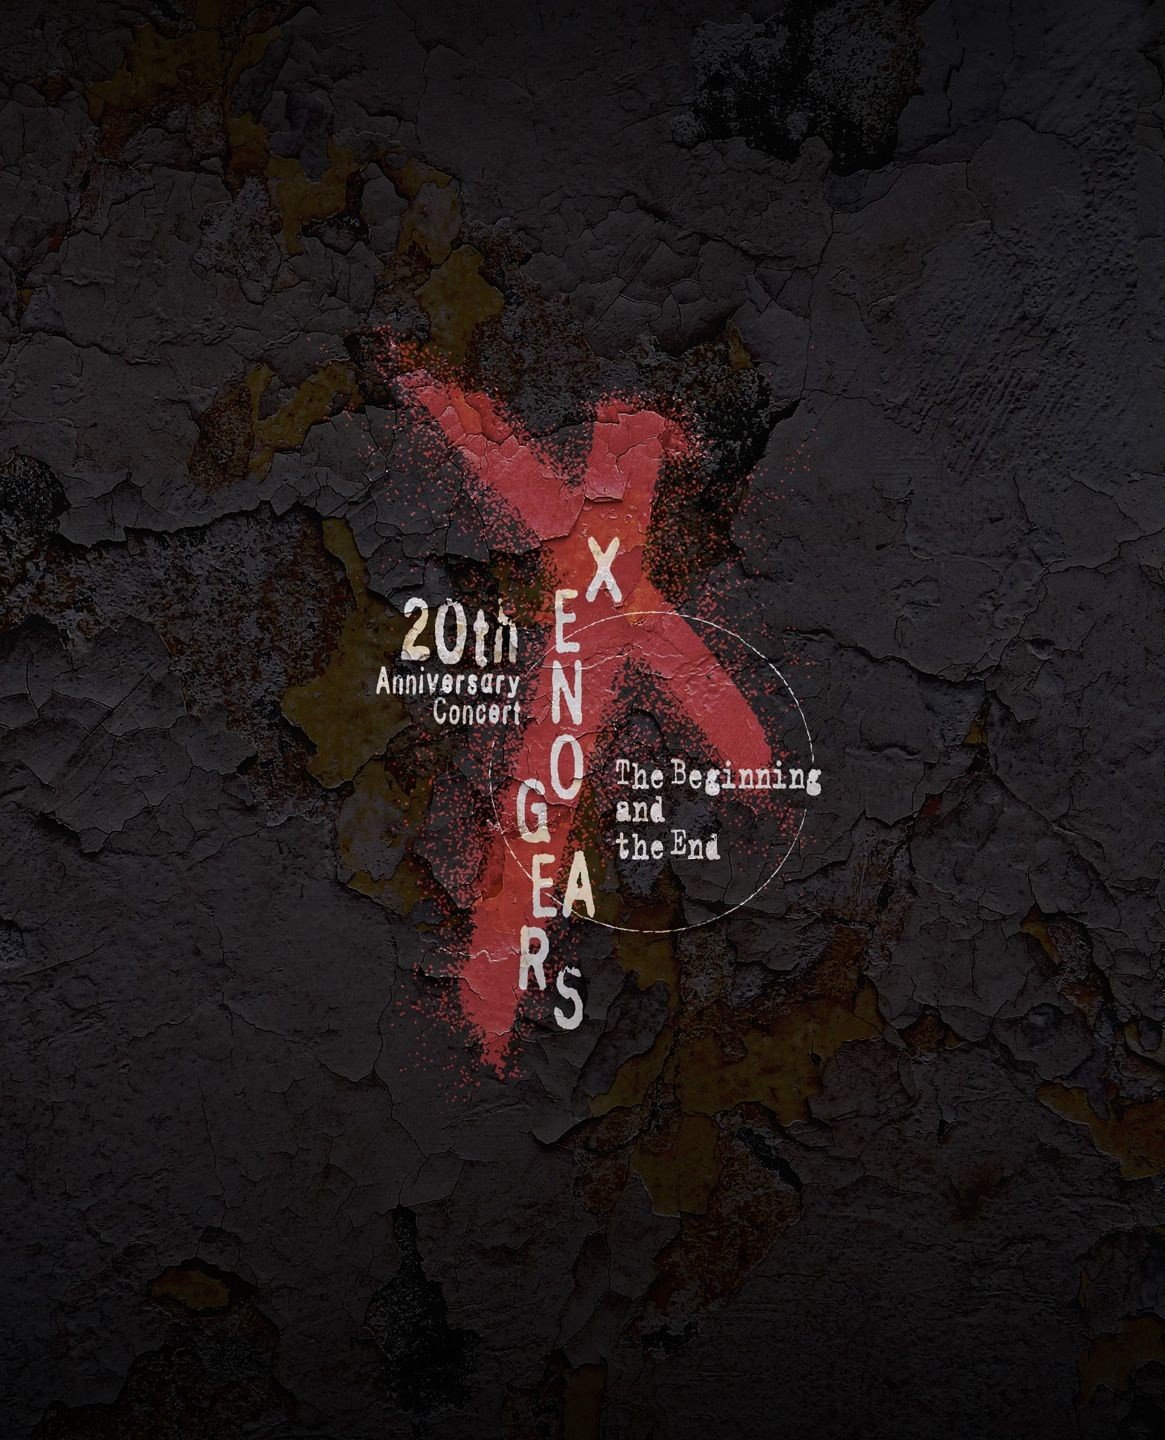 光田康典 (Yasunori Mitsuda) – Xenogears 20th Anniversary Concert – The Beginning and the End (2019) [FLAC 24bit/96kHz]